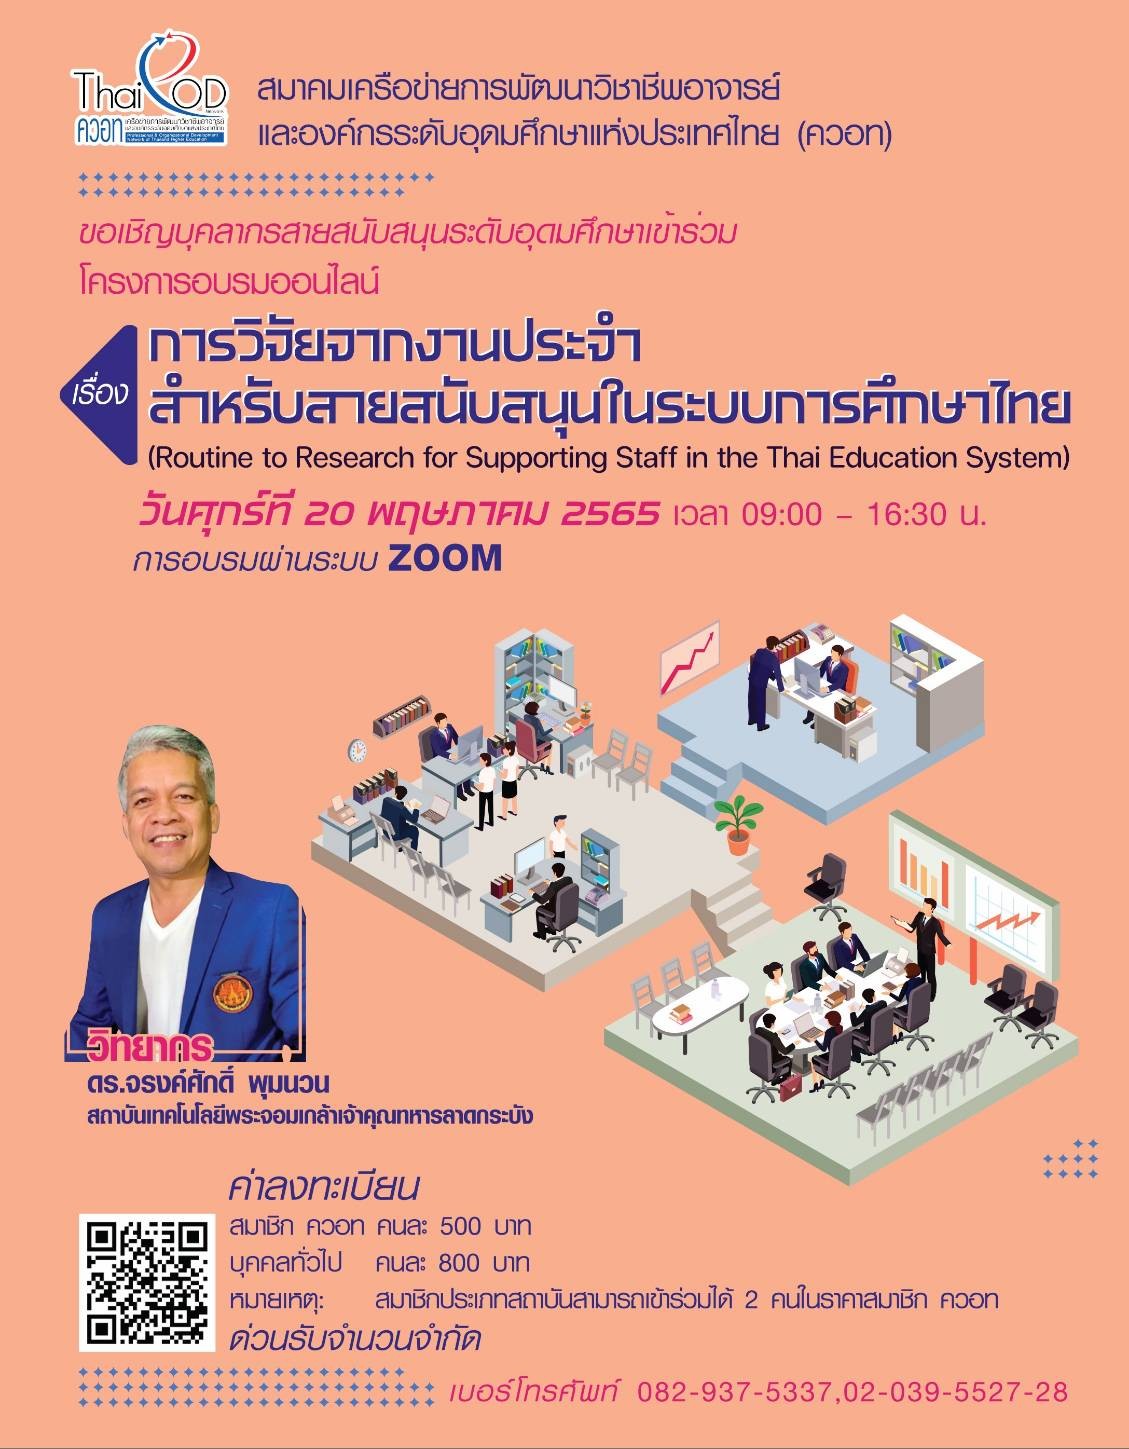 ขอเชิญเข้าร่วมโครงการอบรมออนไลน์ เรื่อง การวิจัยจากงานประจำ สำหรับสายสนับสนุนในระบบการศึกษาไทย (Routine to Research for Supporting Staff in the Thai Education System)